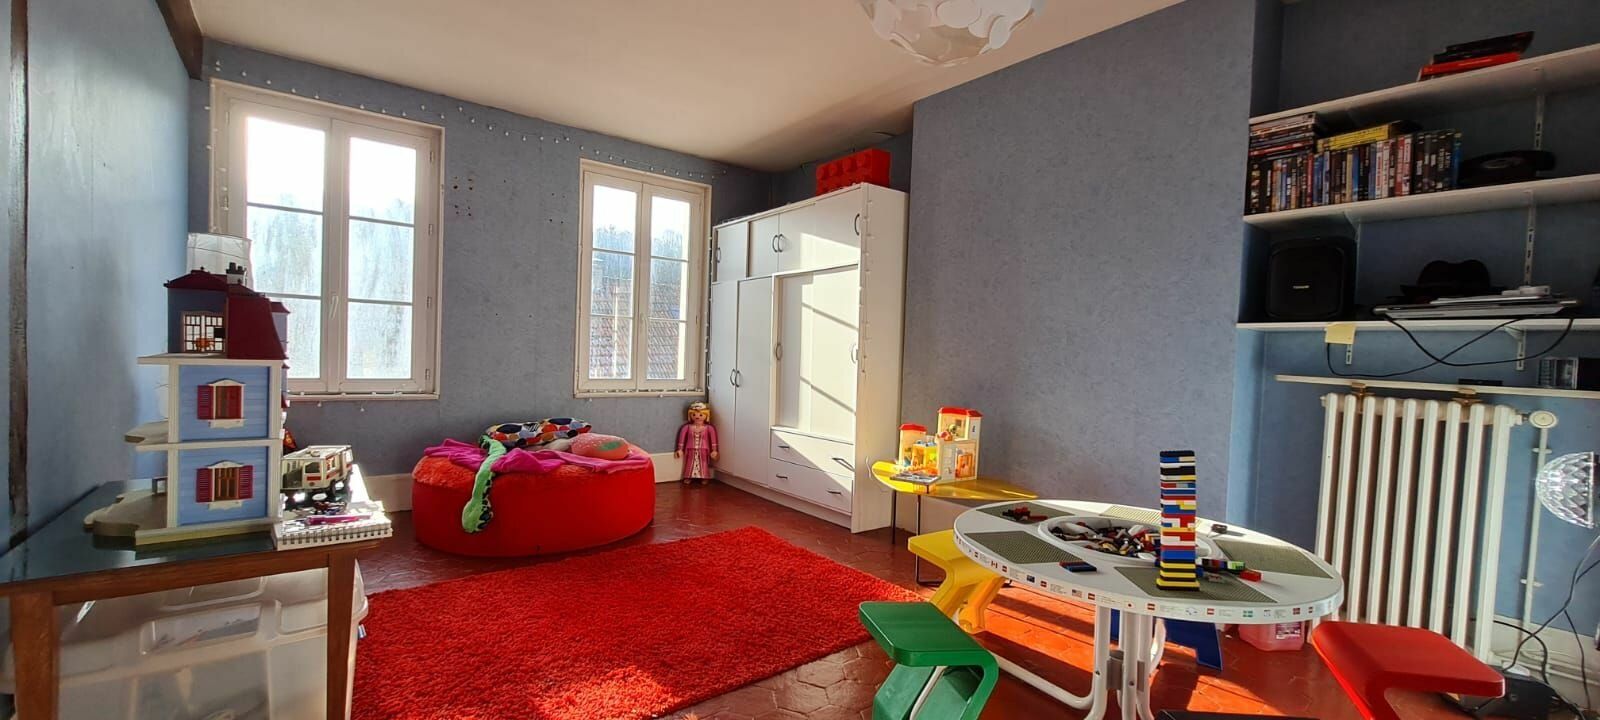 Maison à vendre 7 255.52m2 à Saâcy-sur-Marne vignette-15